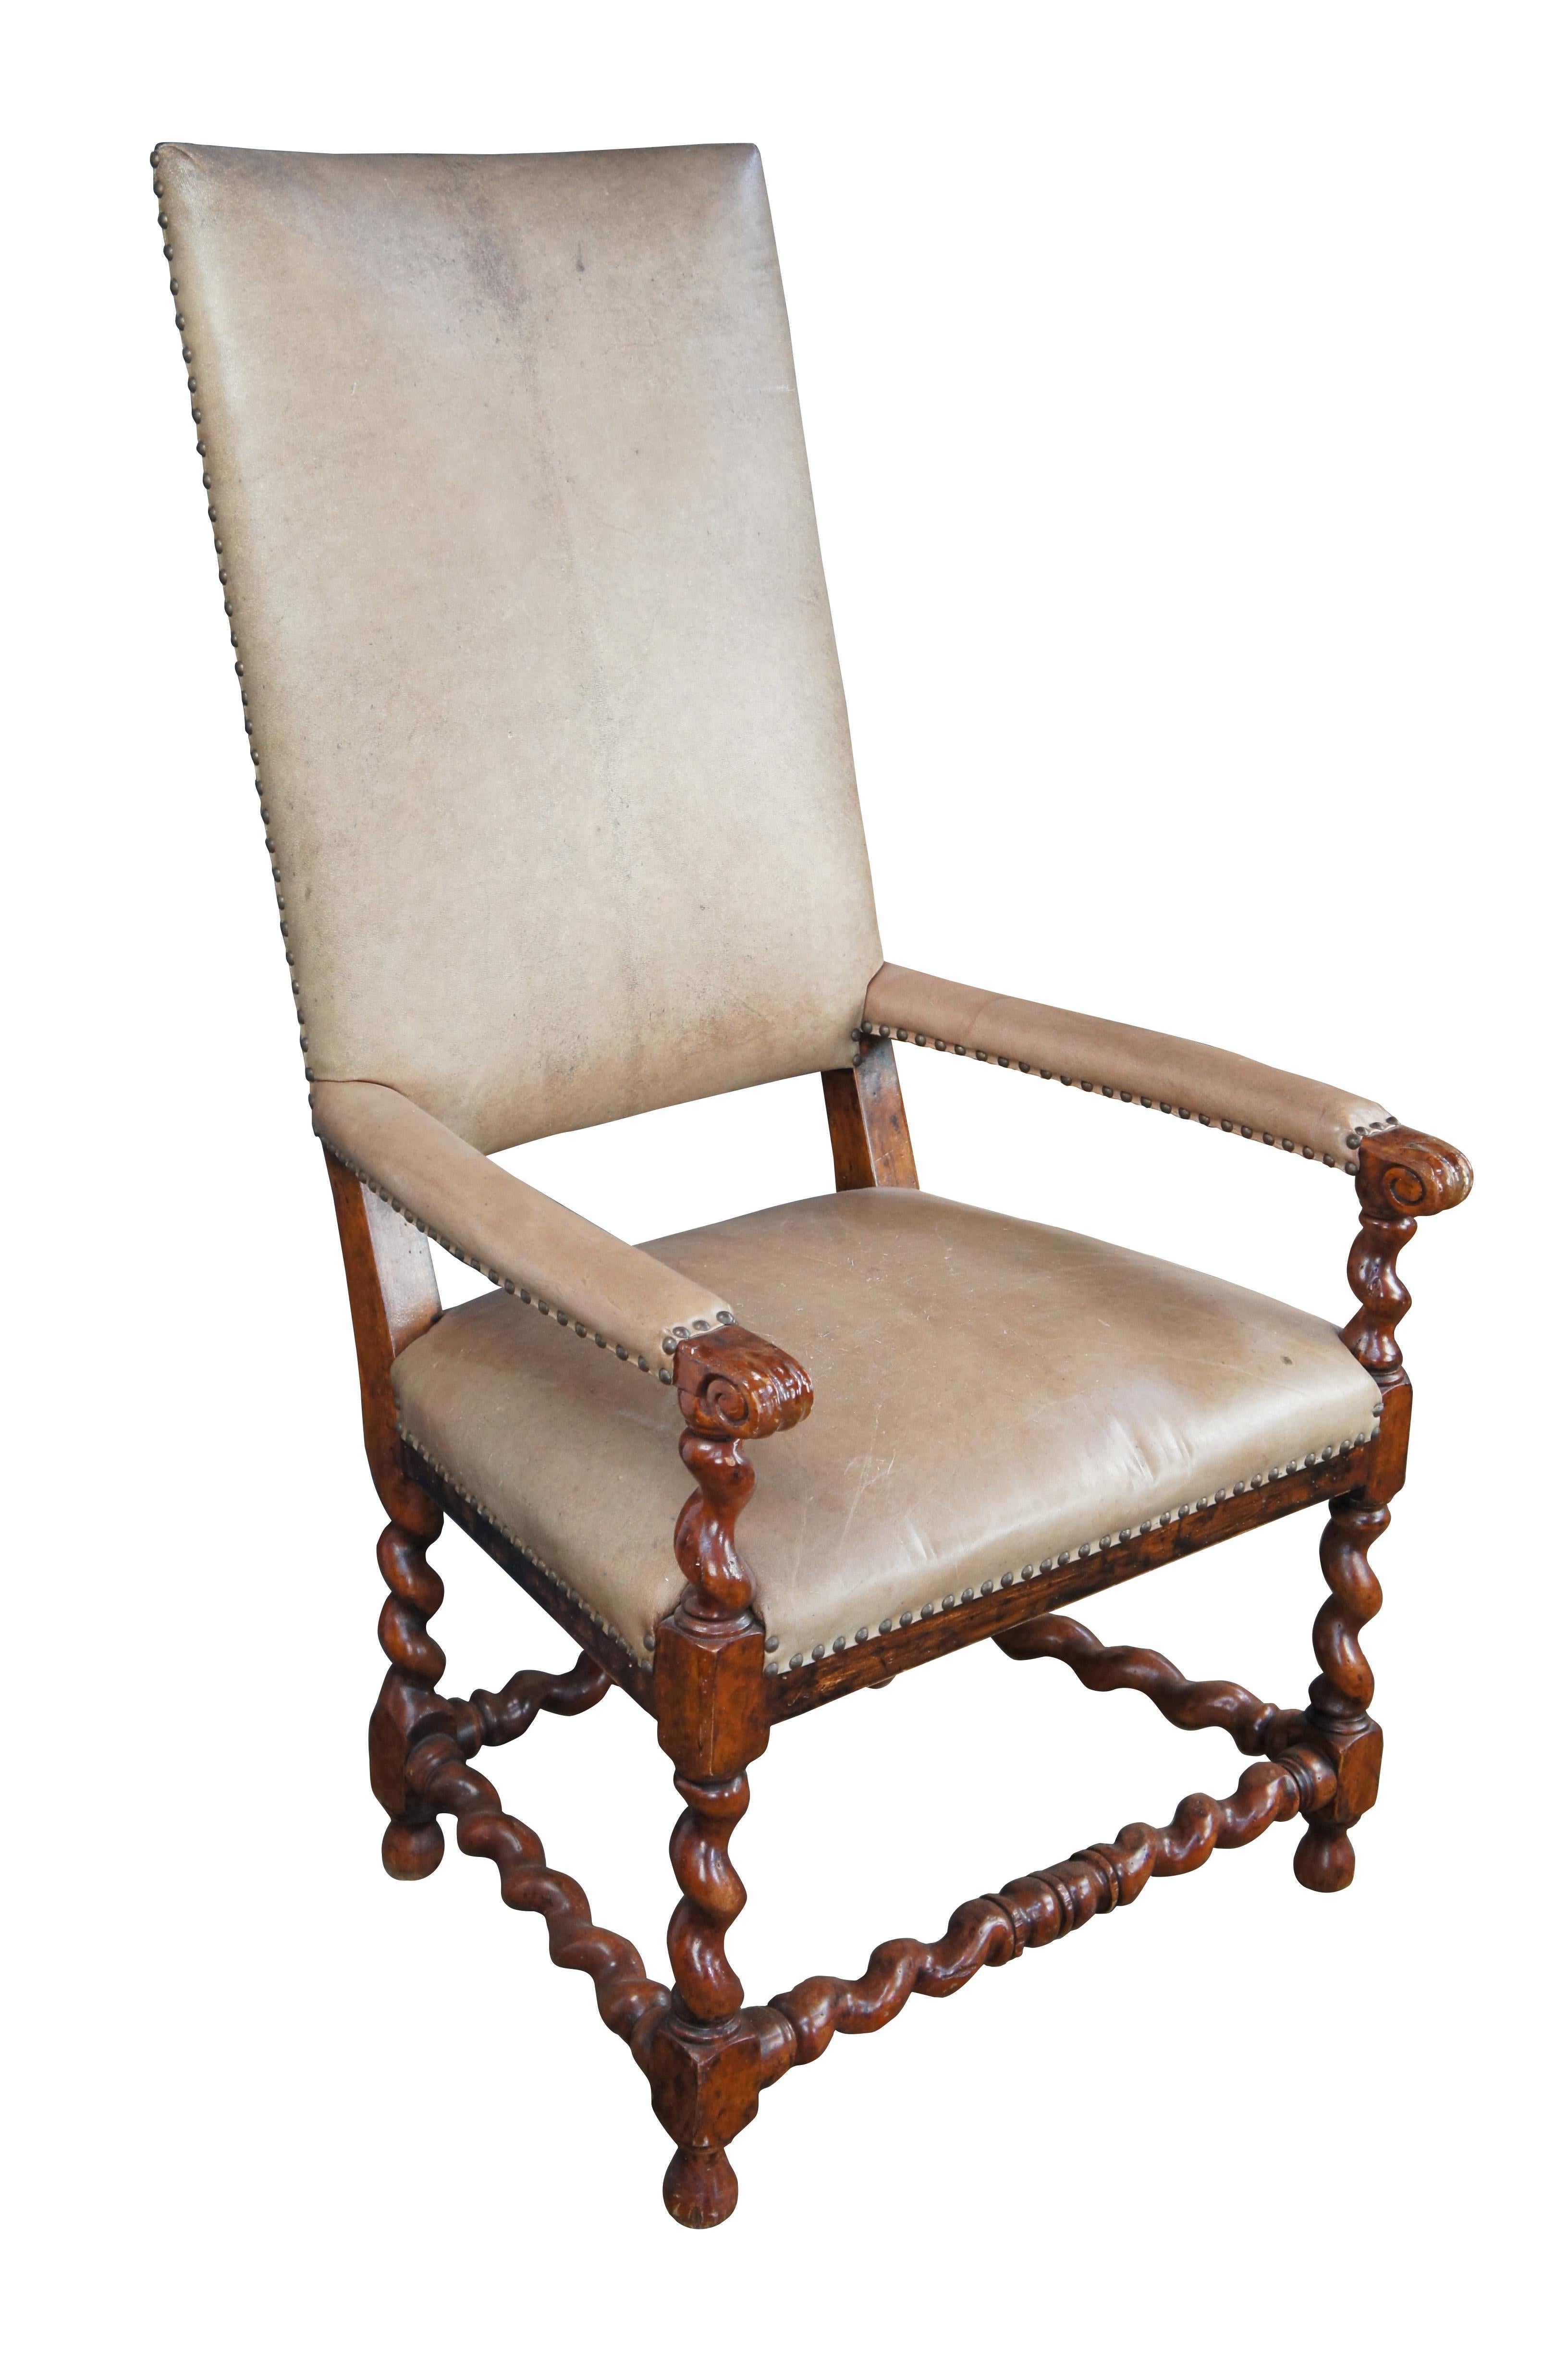 Chaise à bras de style Louis XIII de Theodore Alexander, vers la fin du 20e siècle. Finition noyer, dossier haut rembourré en cuir, accoudoirs à volutes paddés et supports en torsion d'orge. Le cadre est naturellement vieilli. Comprend une garniture